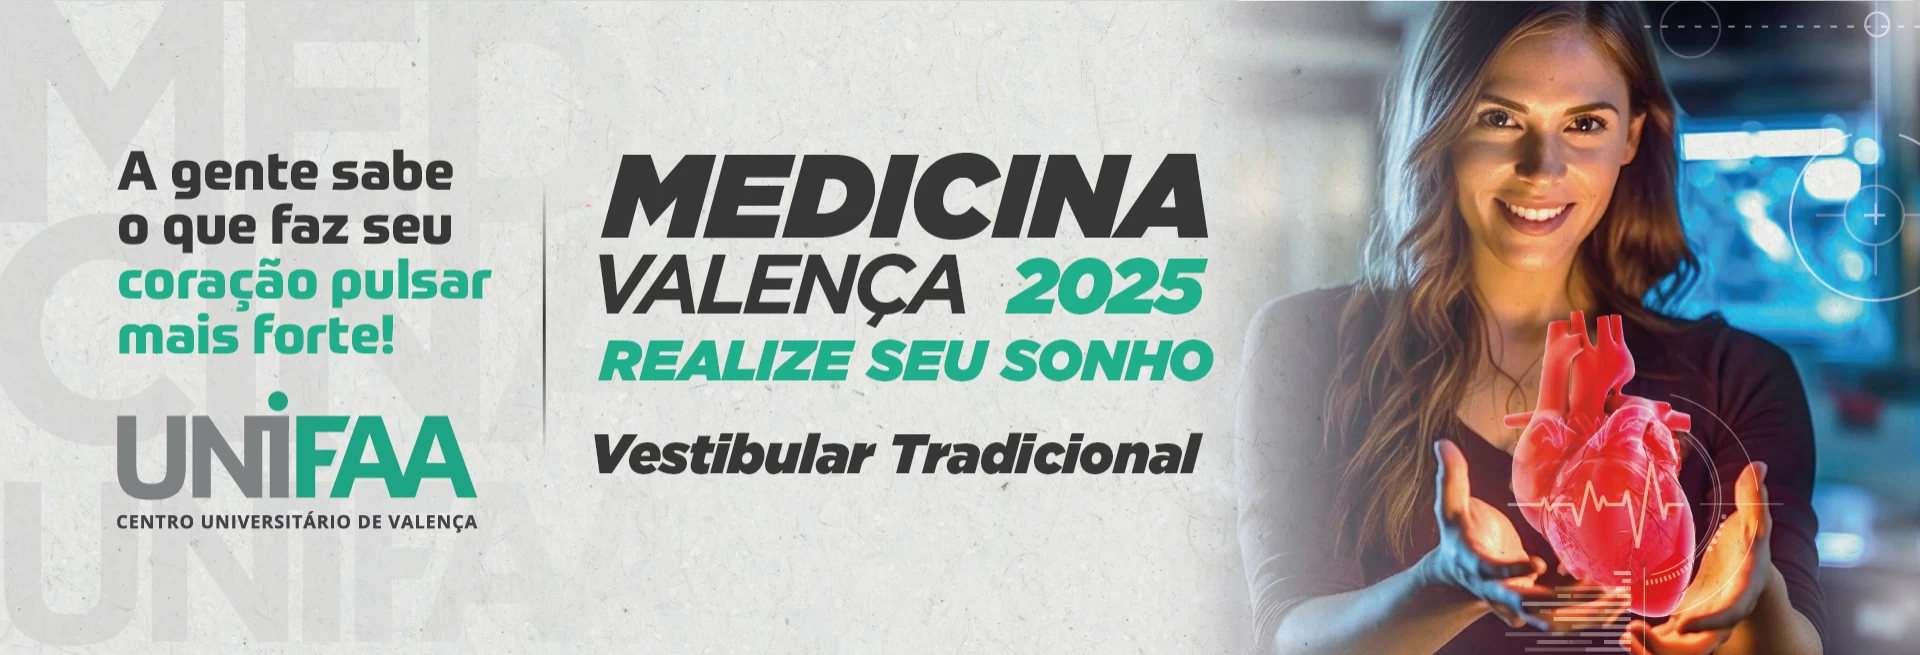 Medicina 2025.1 VEST TRADICIONAL